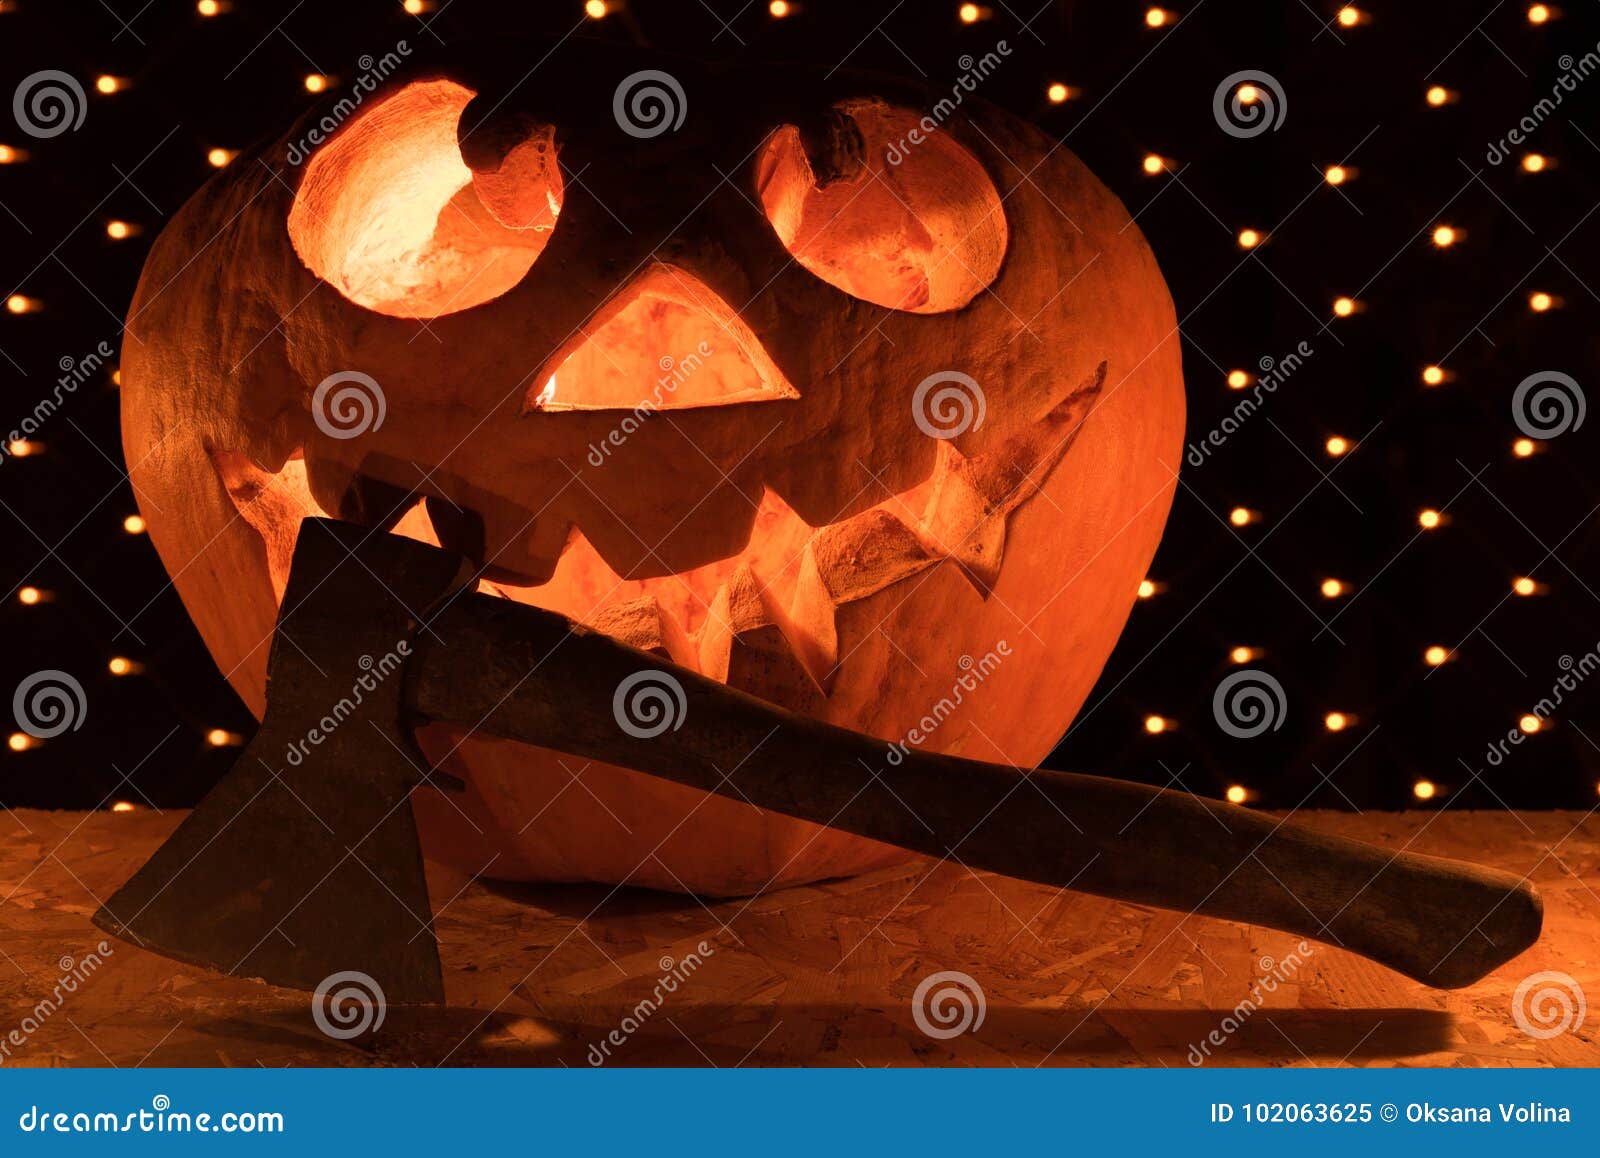 Een grappige oranje pompoen zoals een hoofd met gesneden ogen en een glimlach met het branden van kaarsen en een bijl op een zwarte achtergrond met een slinger voor de Halloween-partij